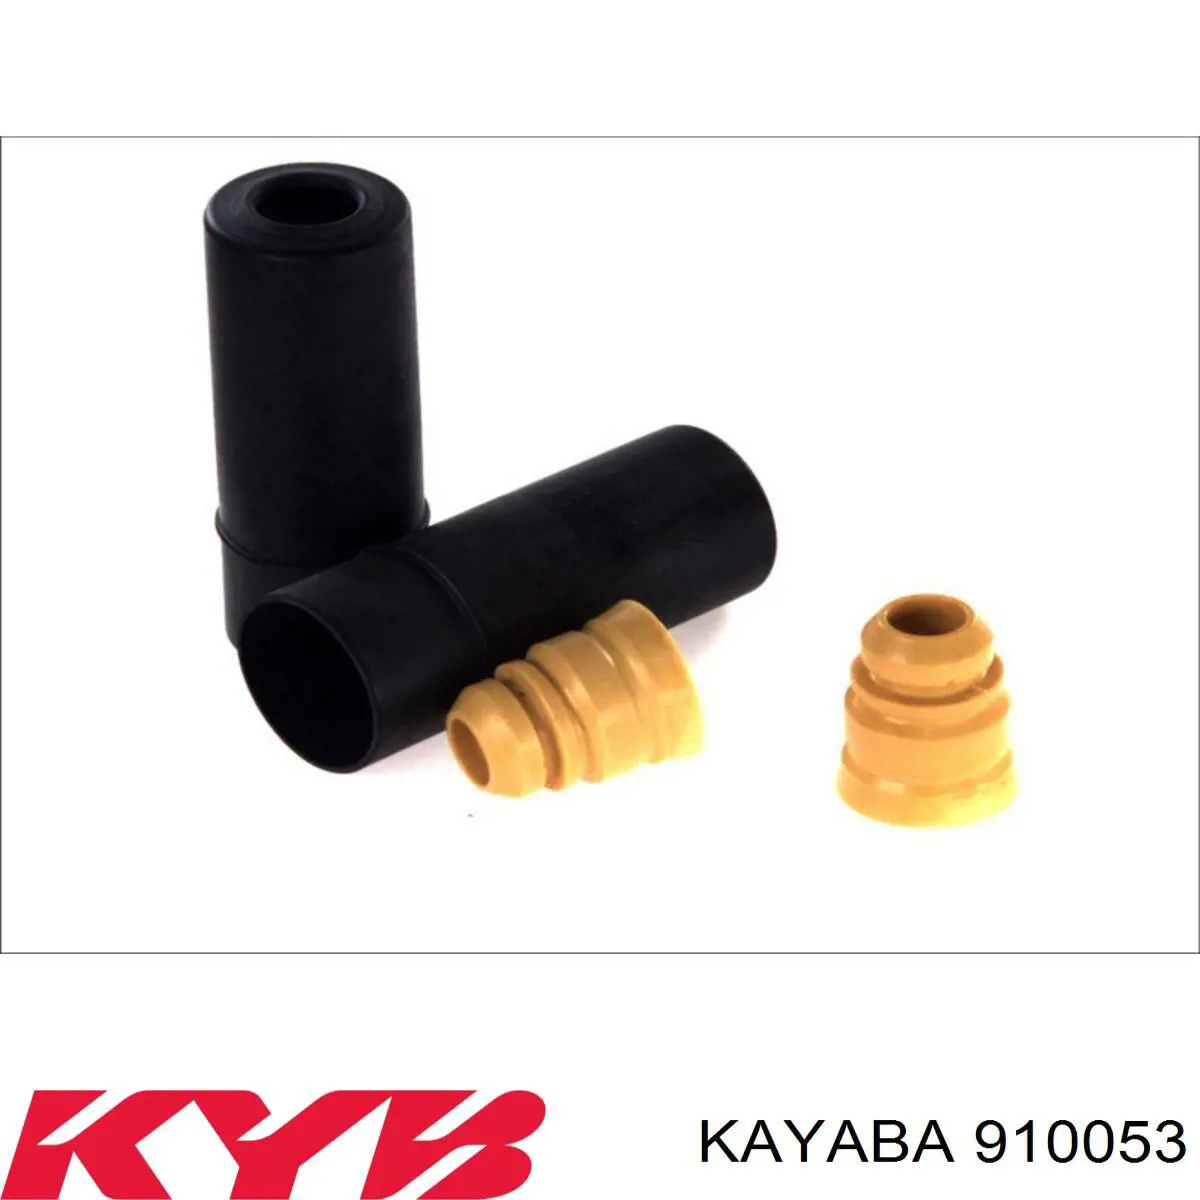 910053 Kayaba pára-choque (grade de proteção de amortecedor traseiro + bota de proteção)